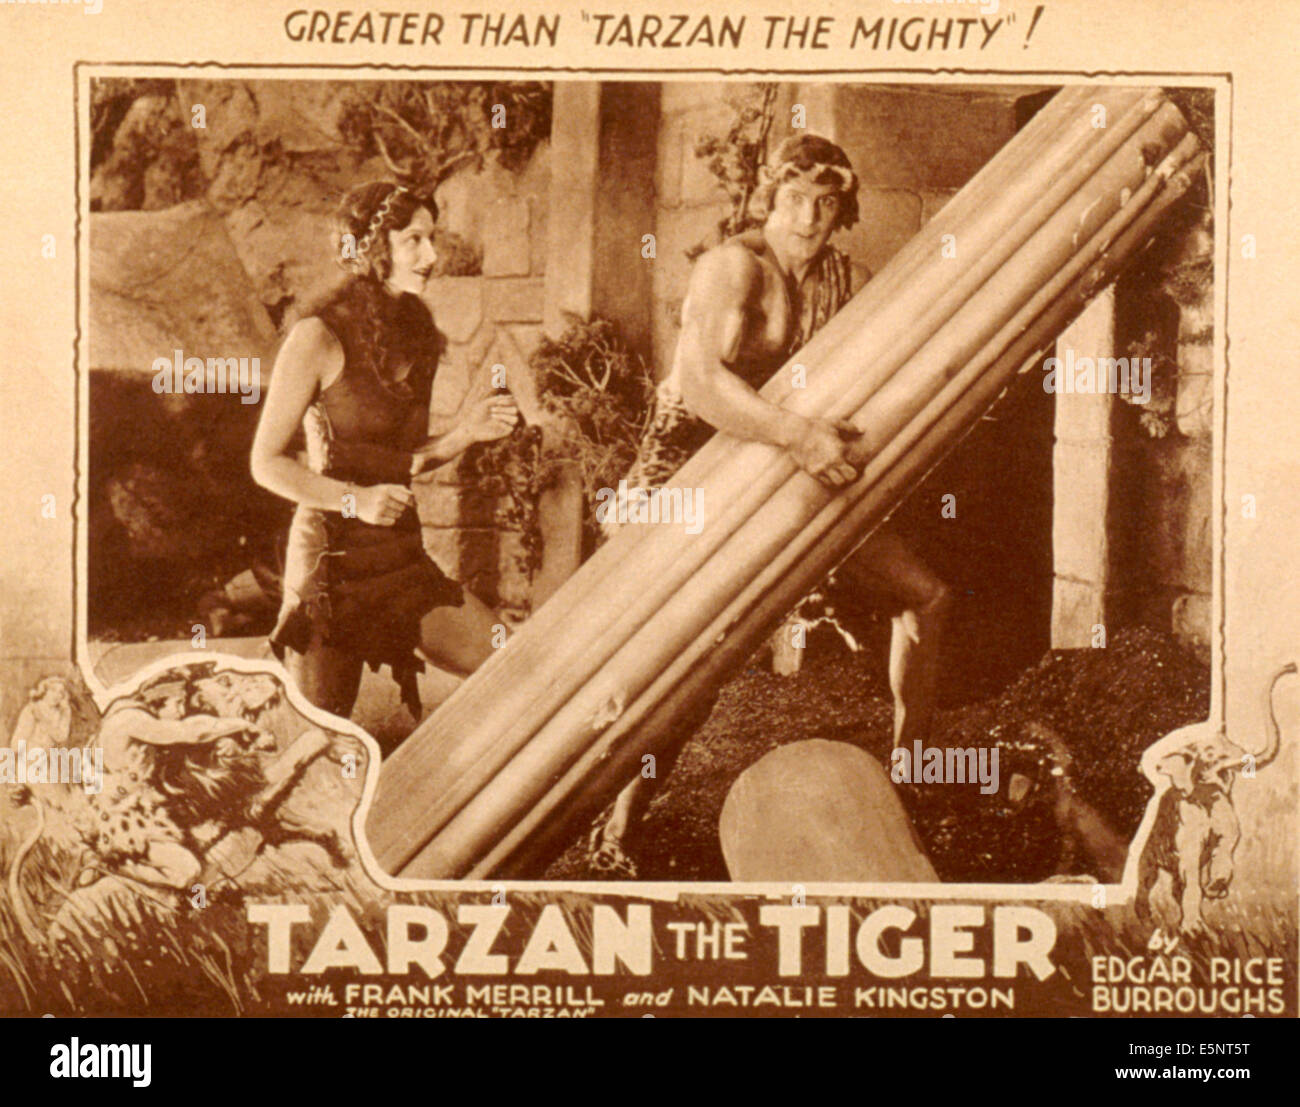 TARZAN THE TIGER, Natalie Kingston, Frank Merrill, 1929 Stock Photo